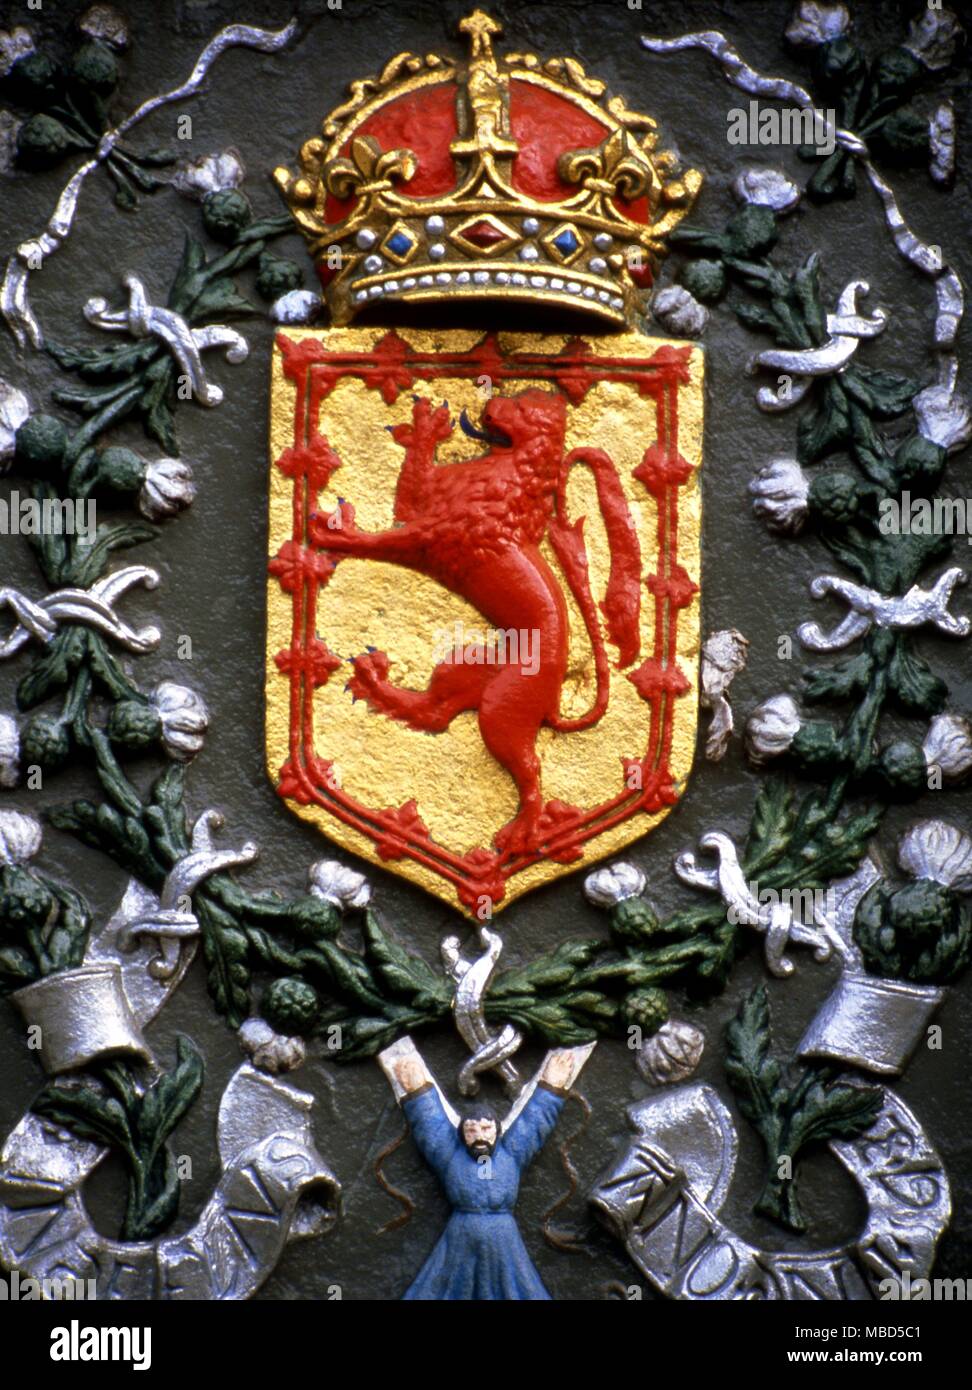 Symbole - die Krone. Krone als Teil der heraldische Symbolik der Stadt St. Andrews, Schottland. Stockfoto